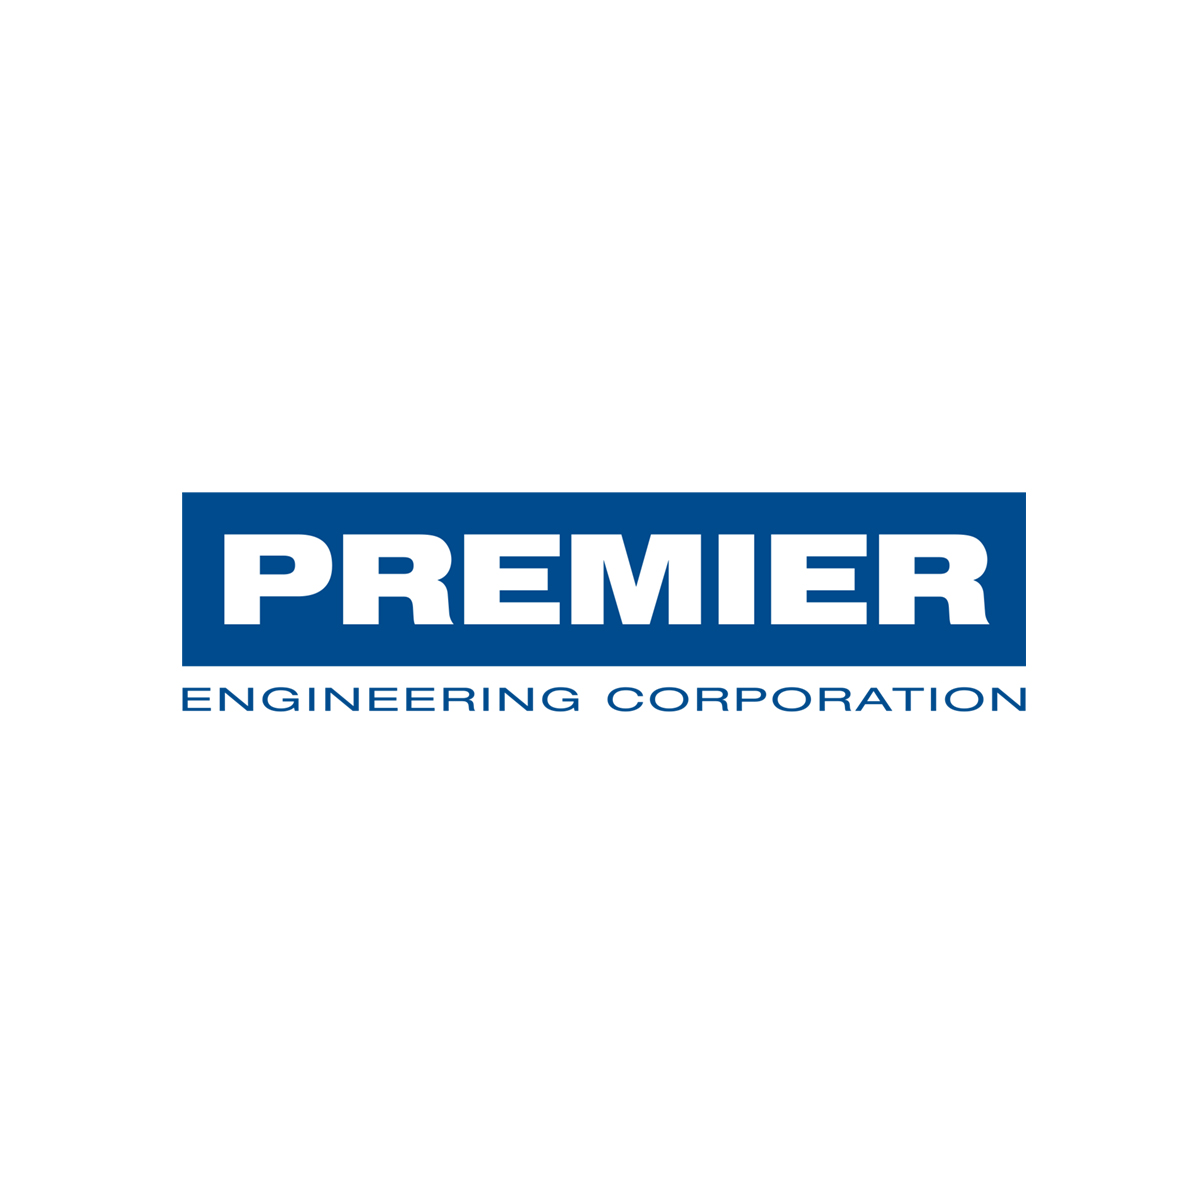 Premier Engineering logo.jpg